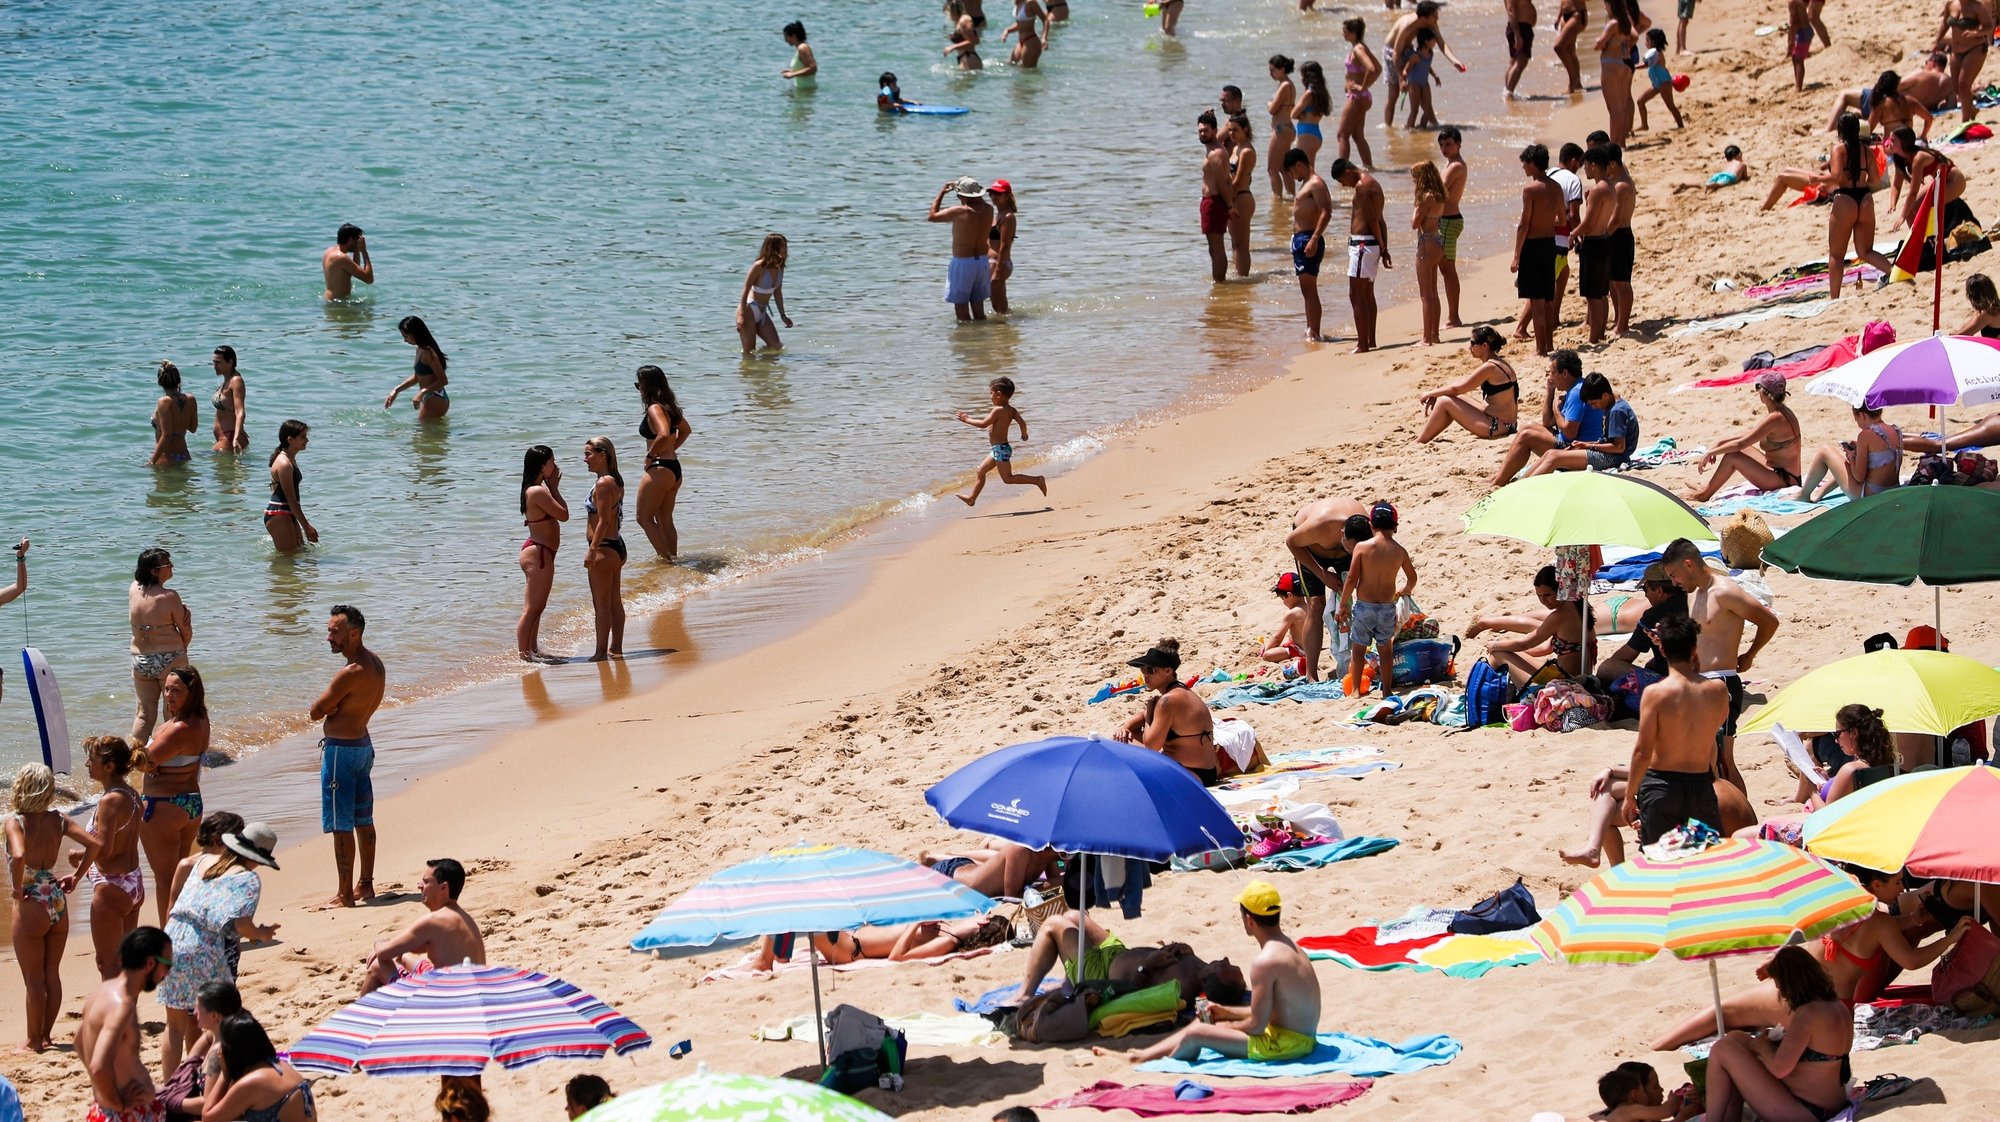 Populares frequentam a praia de São Pedro do Estoril, em Cascais, 10 de junho de 2021. Devido às altas temperaturas, a afluência foi muito alta nas praias da Linha do Estoril. JOSE SENA GOULAO/LUSA